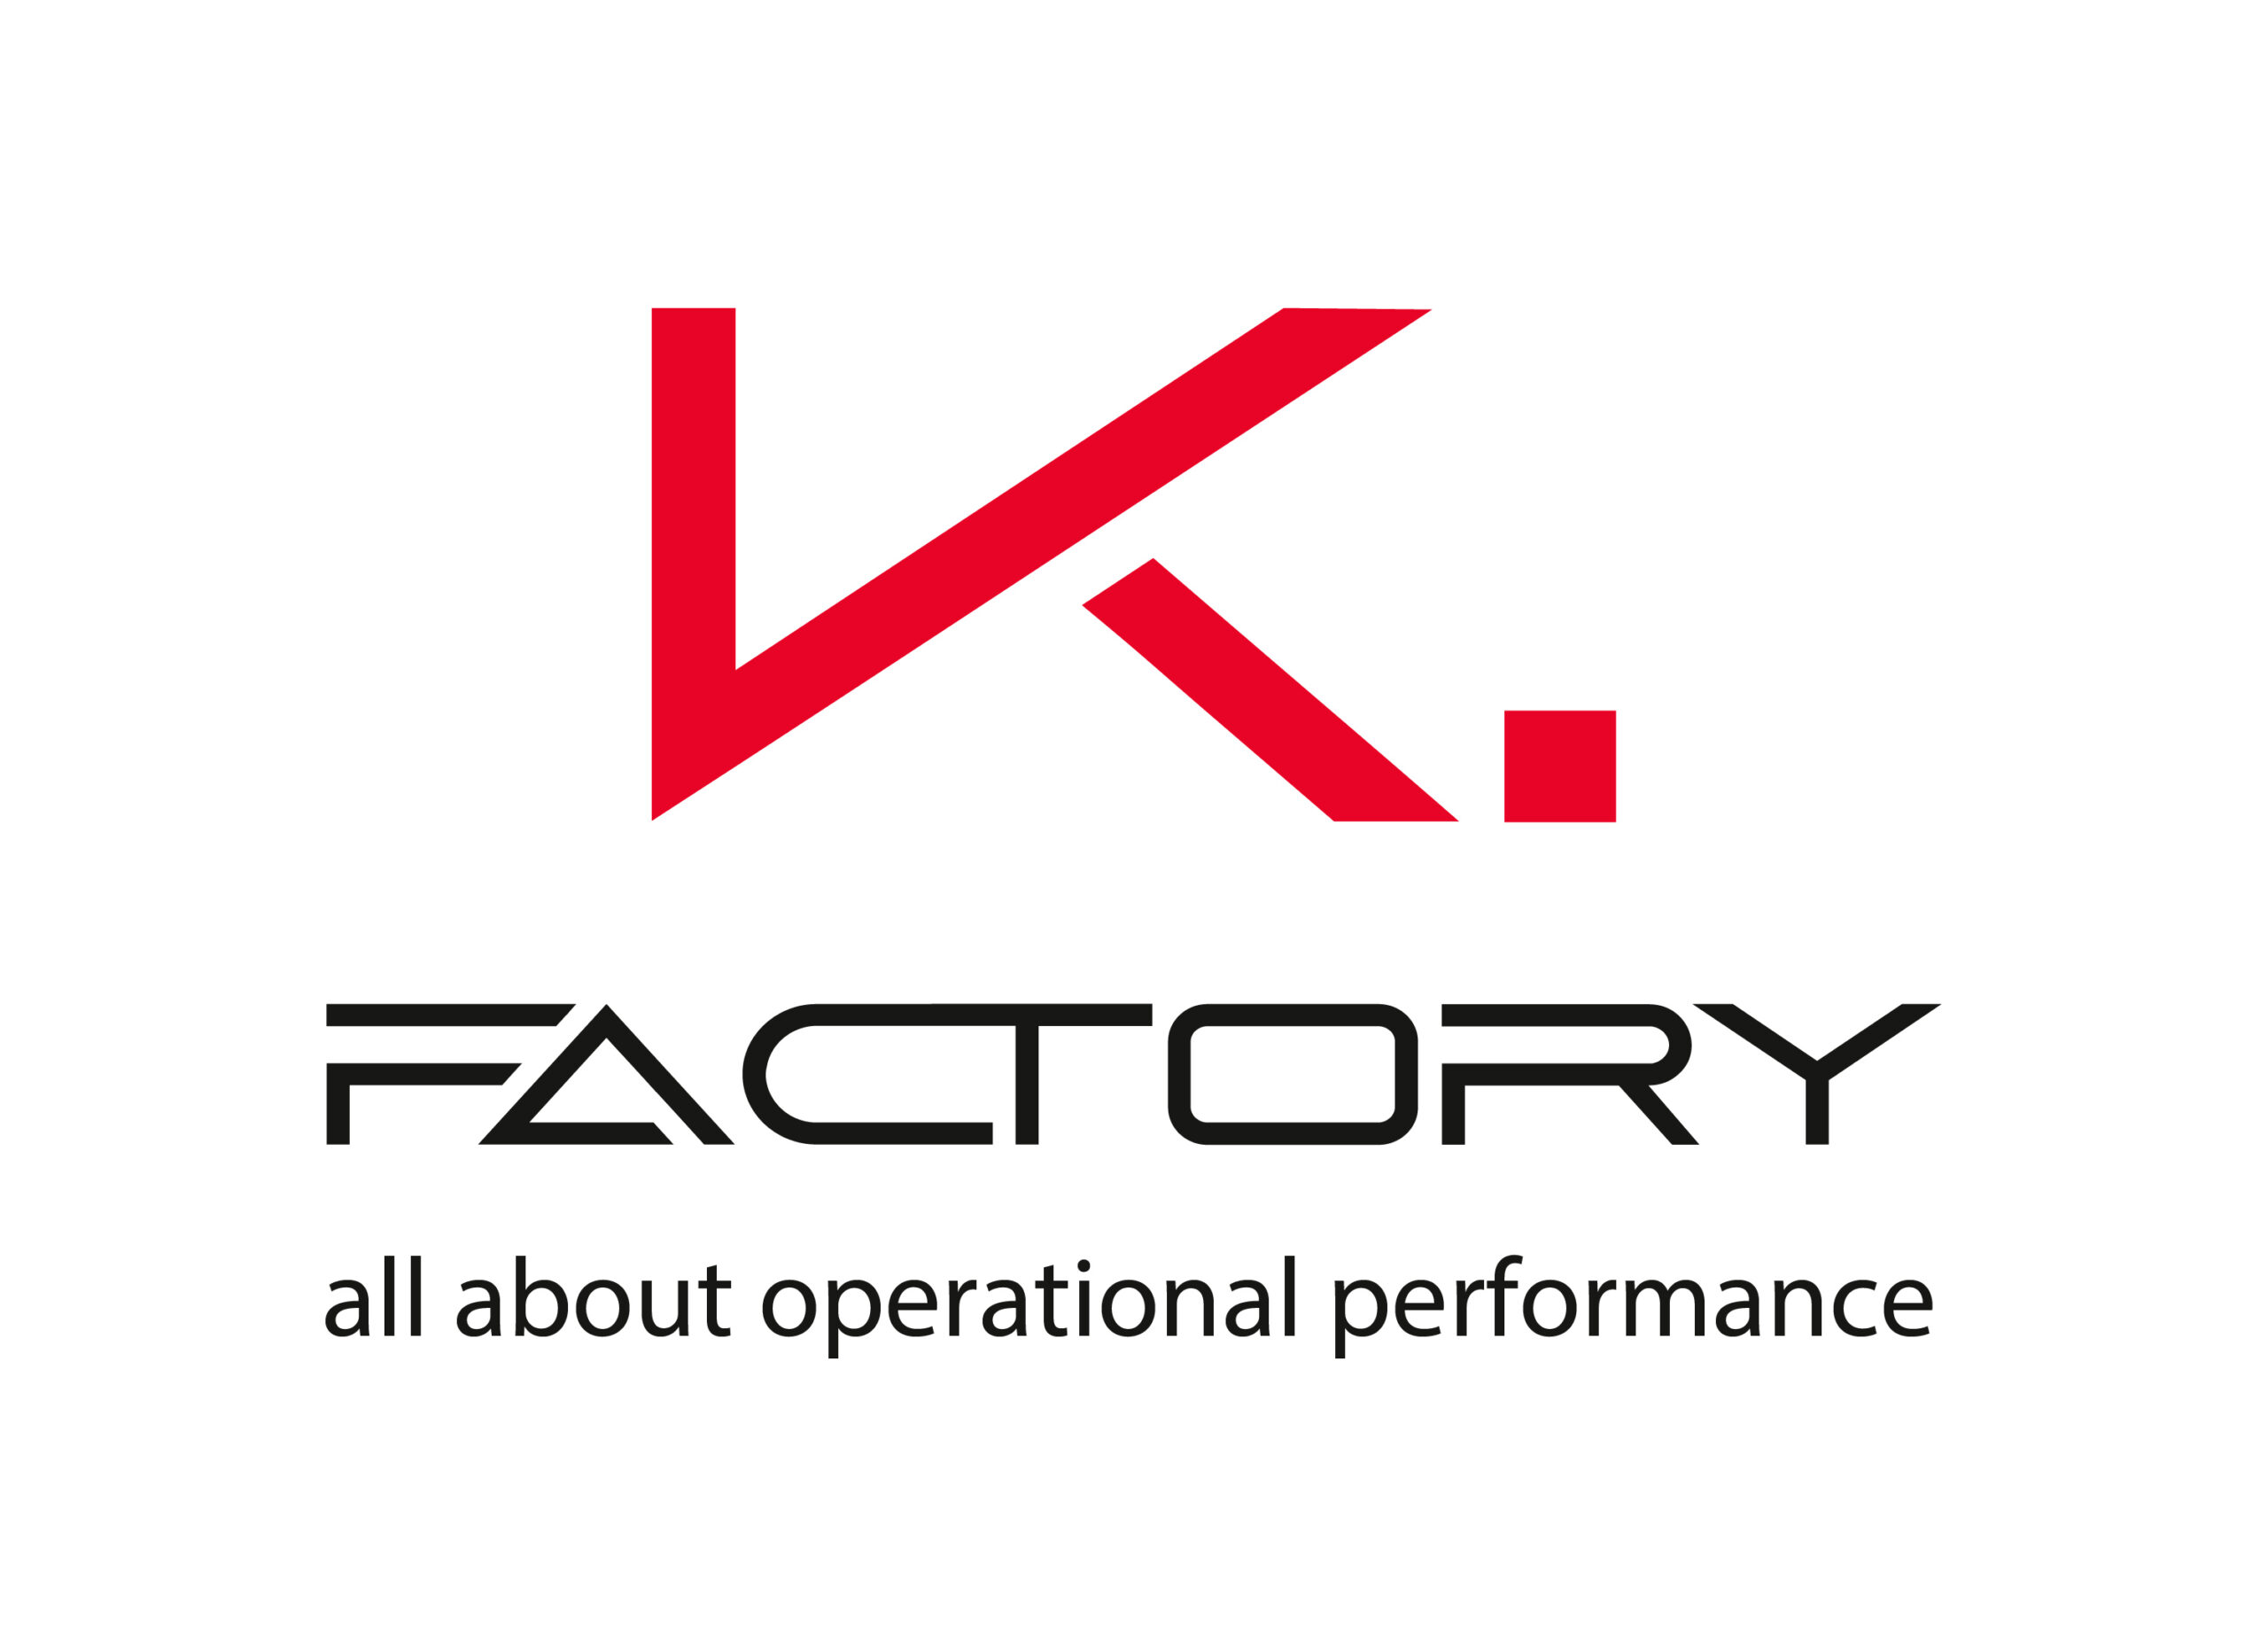 KFactory